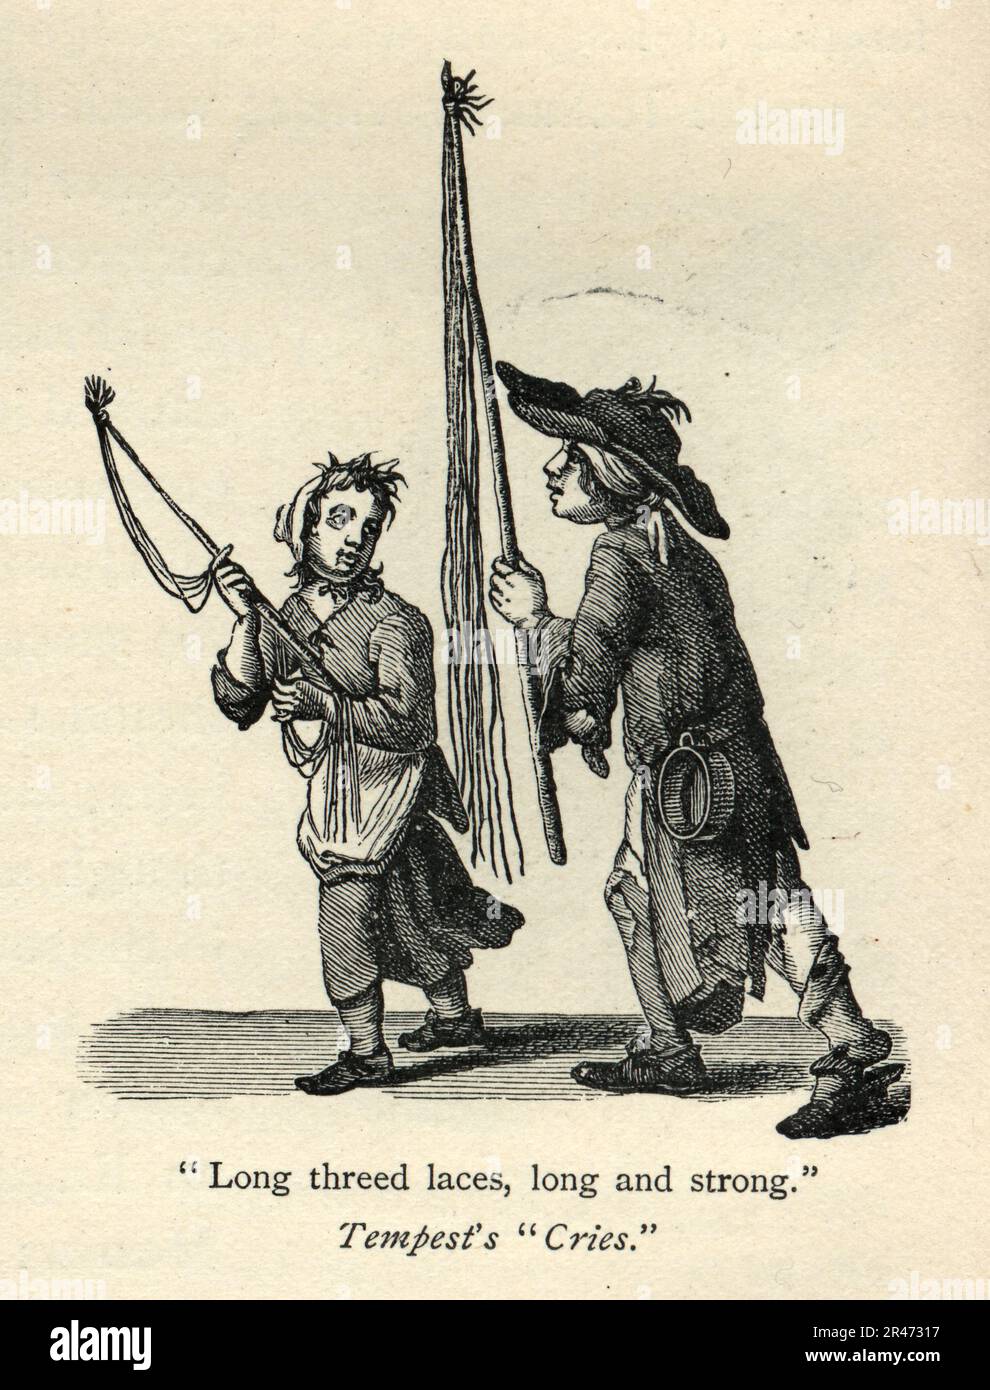 Les cris de Tempest de Londres, garçon et fille vendant des lacets, long et fort, 18th siècle histoire britannique, Vintage Illustration Banque D'Images